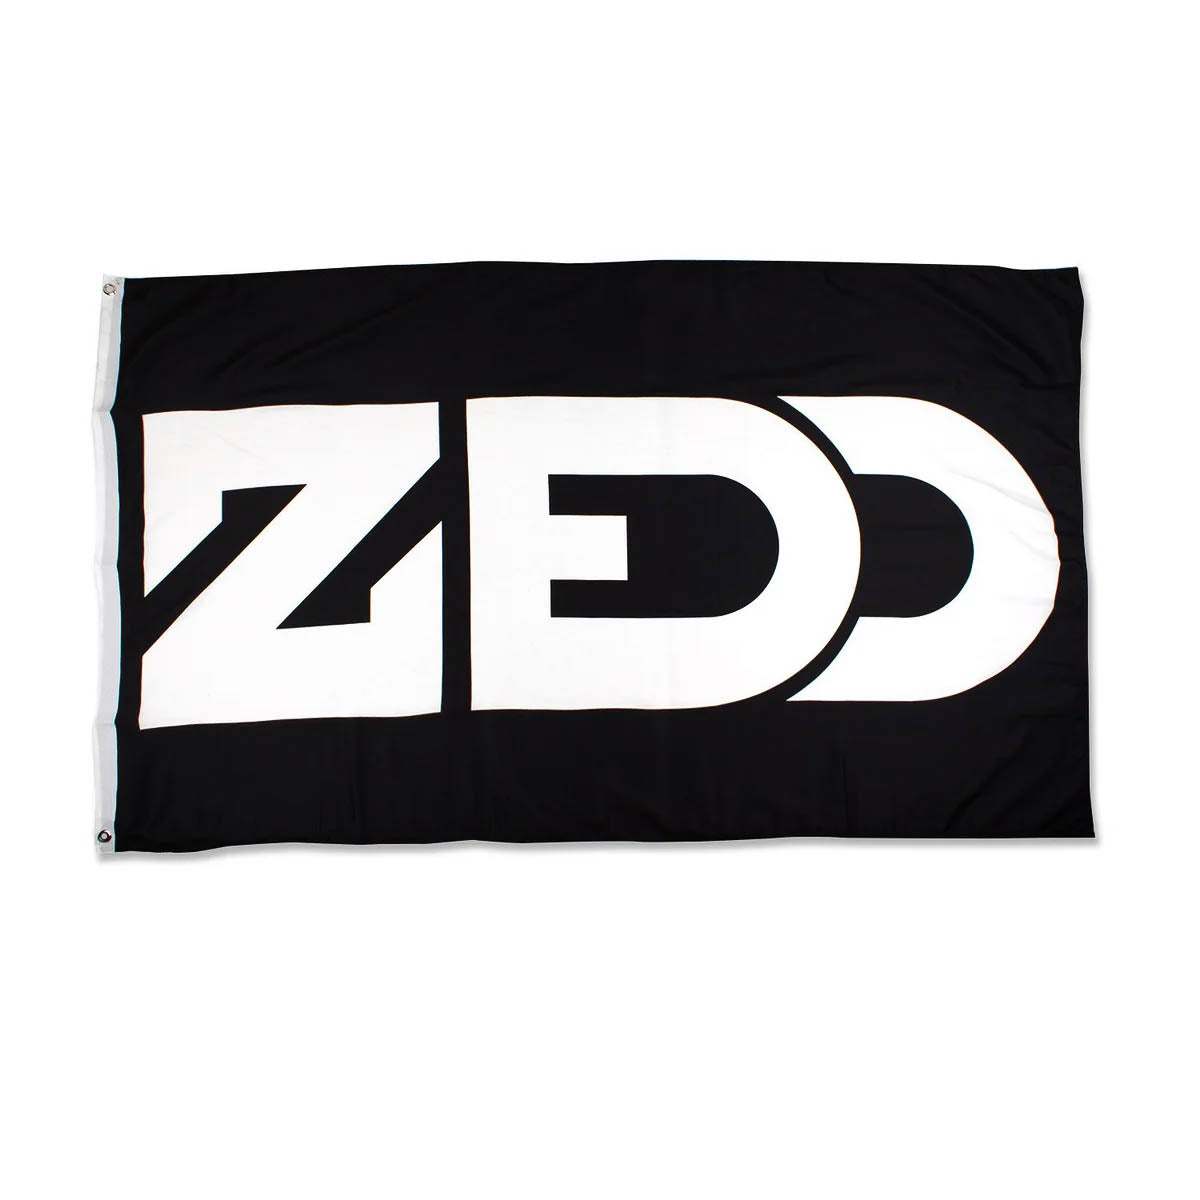 ZEDD LOGO FLAG BLACK/WHITE - ZEDDFLAG